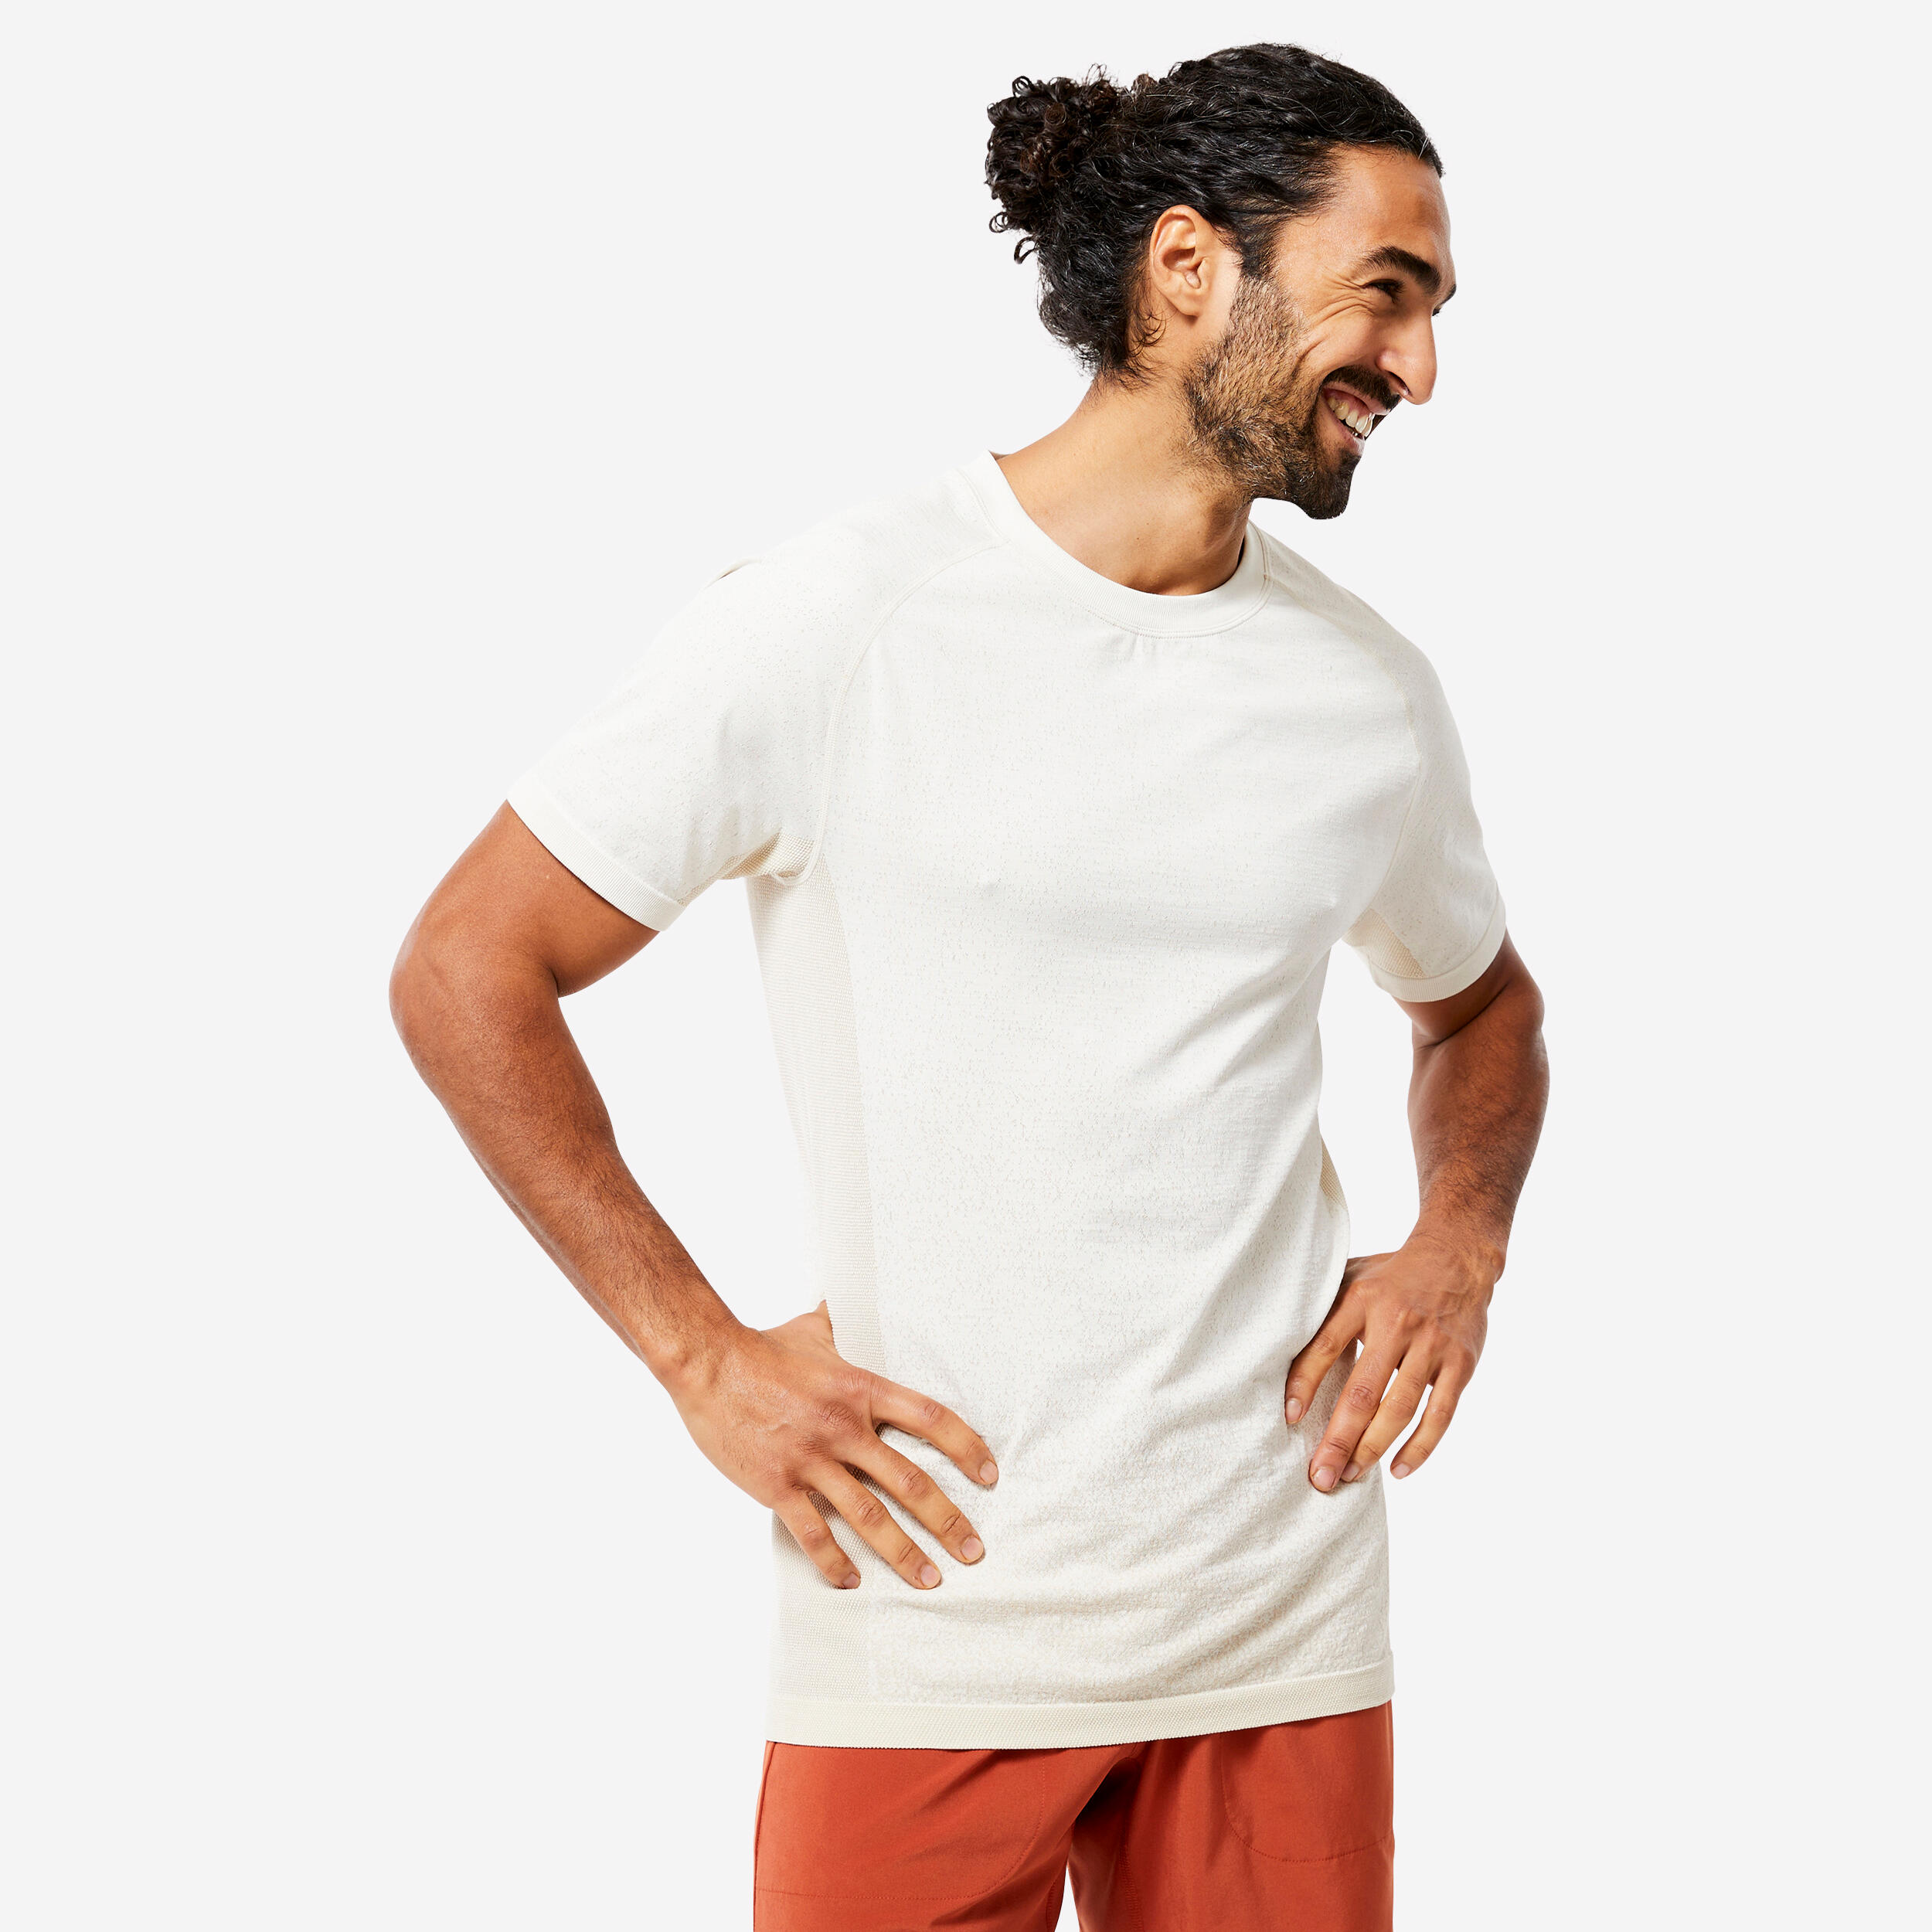 Dieses leichte und atmungsaktive T-Shirt mit der nahtlosen Seamless-Technologie begleitet Yogis auch bei anspruchsvollsten Haltungen.